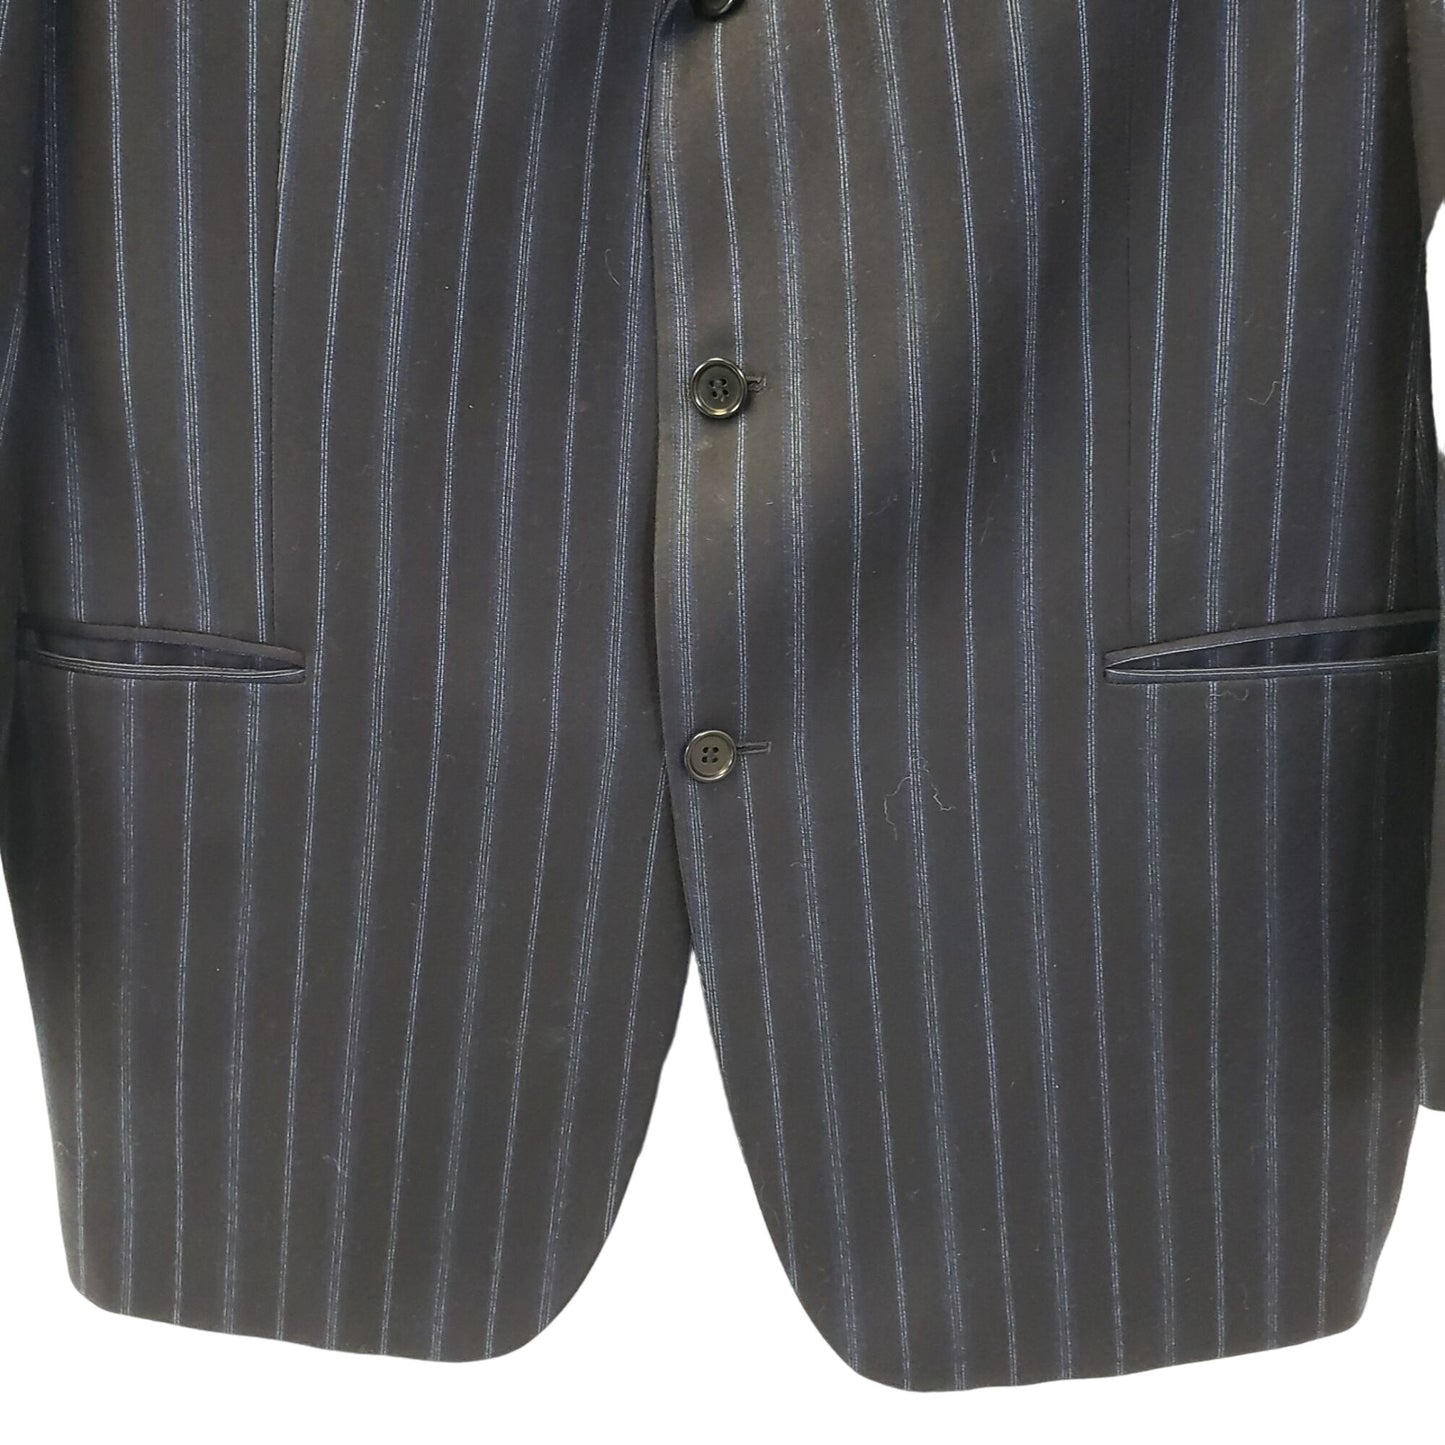 BOSS Hugo Boss Wool & Cashmere Blend Striped 3 Button Sport Coat Size 44R